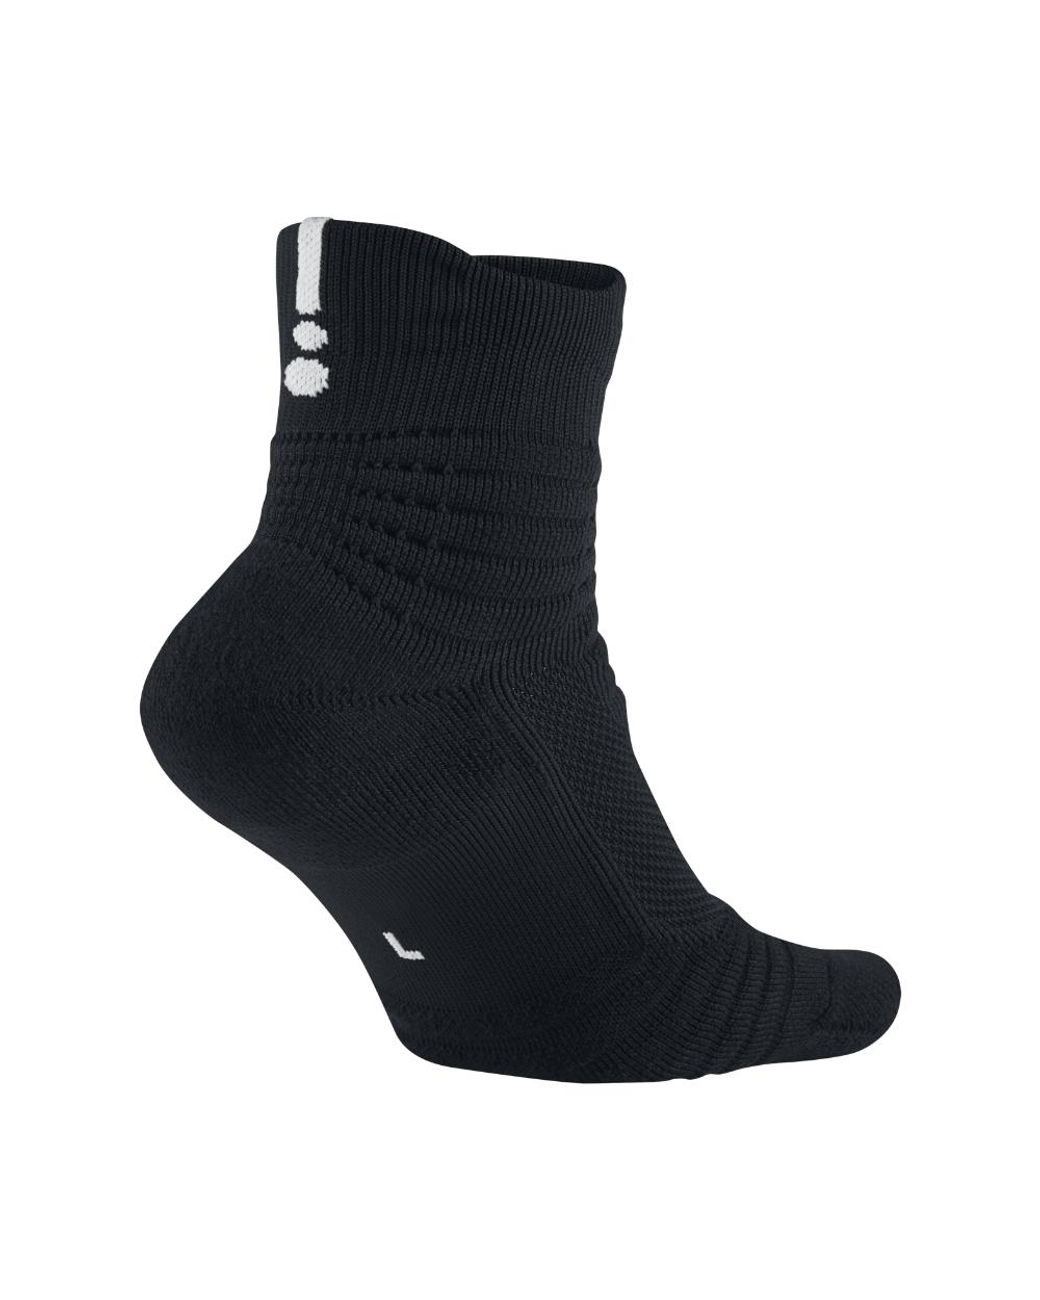 Nike Elite Versatility Mid Basketball Socks in Black for Men